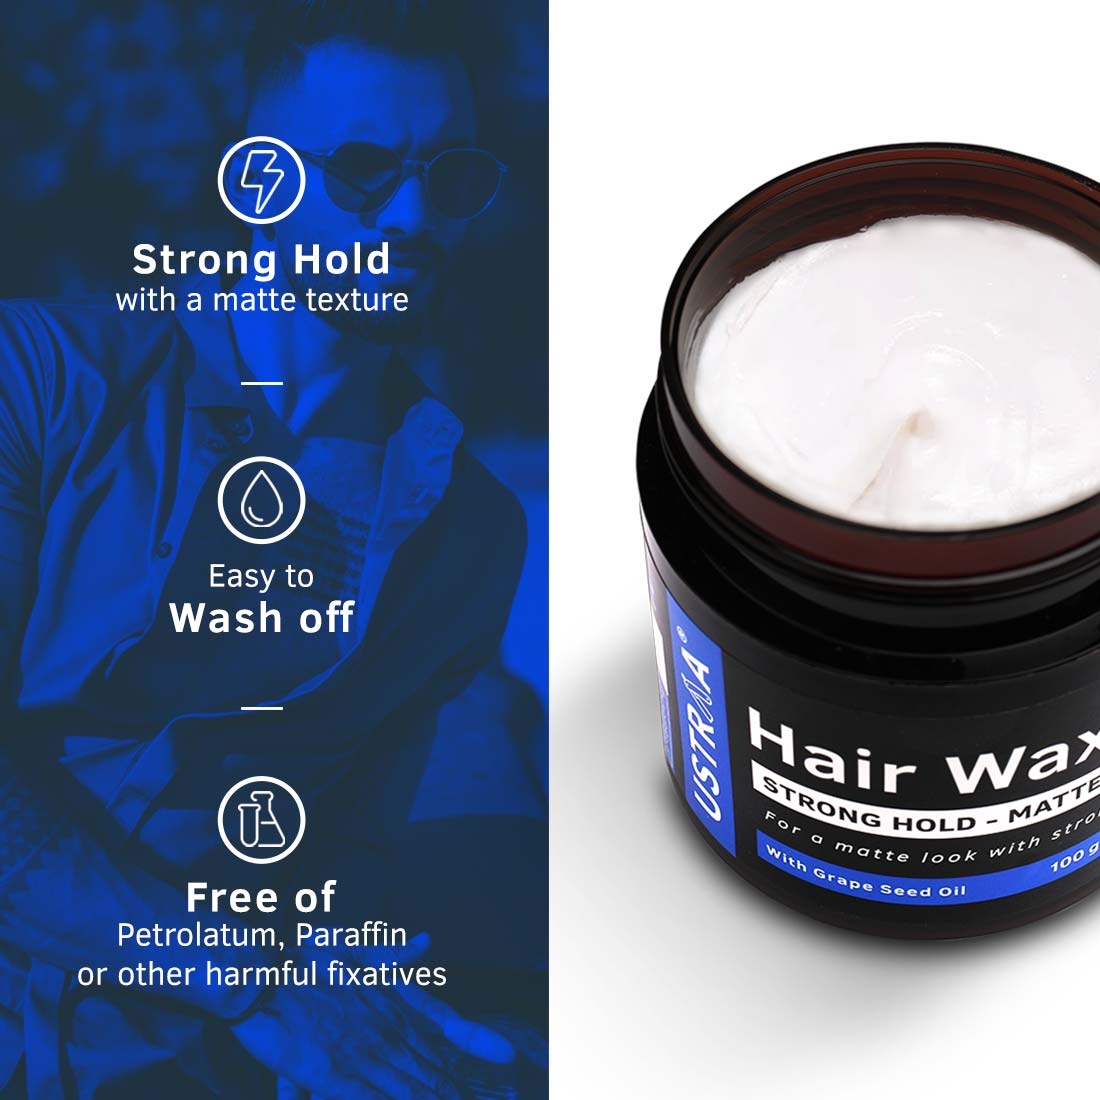 Ustraa | Ustraa Ayurvedic Beard Growth Oil -100ml & Hair Wax Matte - 100g 6